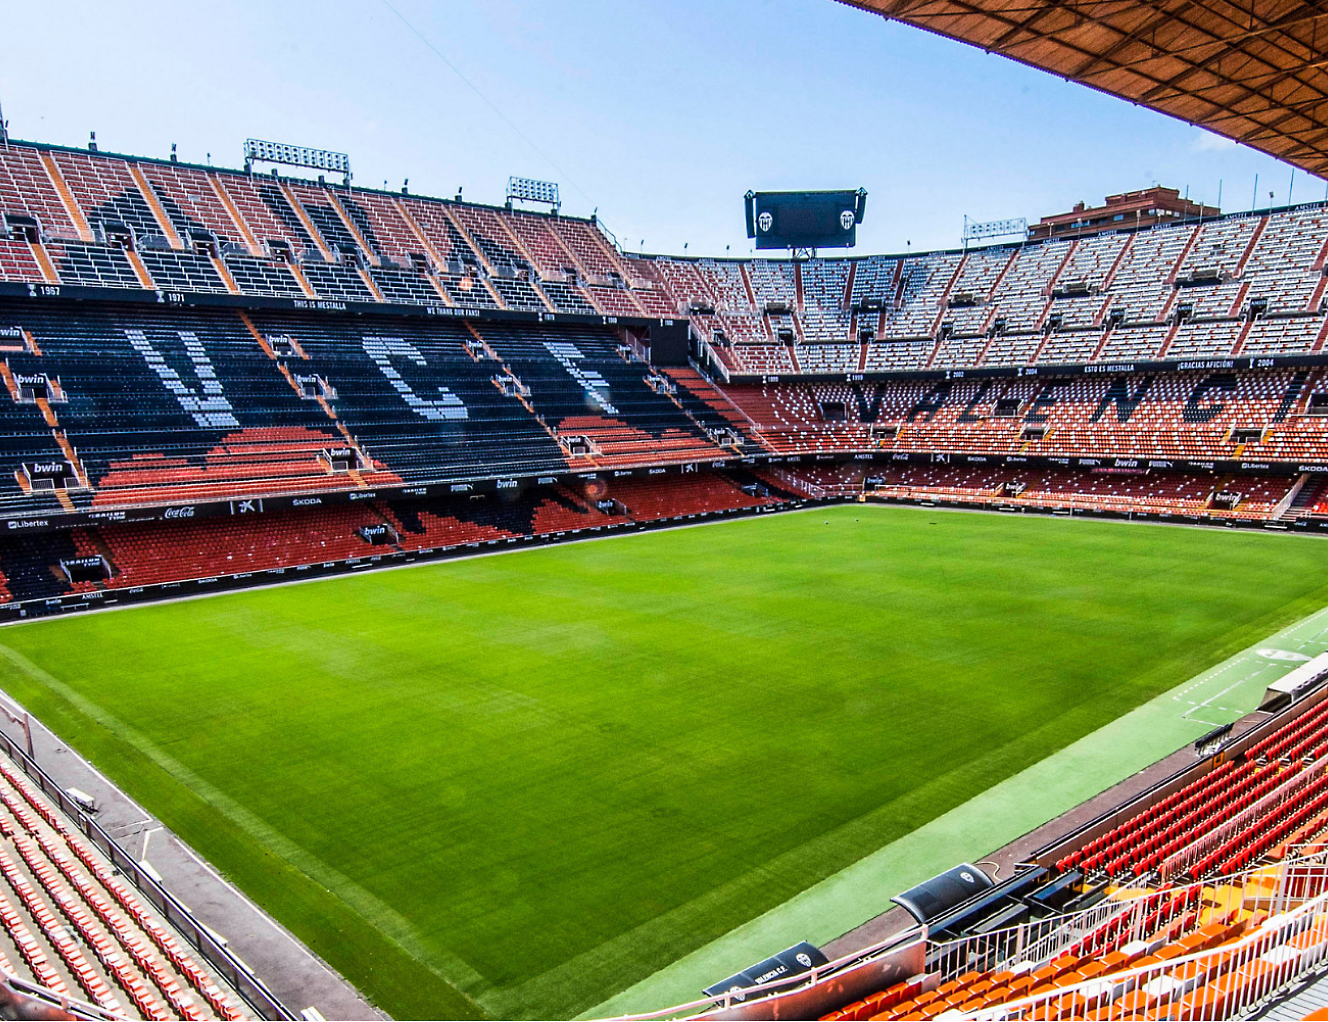 Το εσωτερικό ενός σταδίου ποδοσφαίρου με γήπεδο σε πορτοκαλί χρώμα.